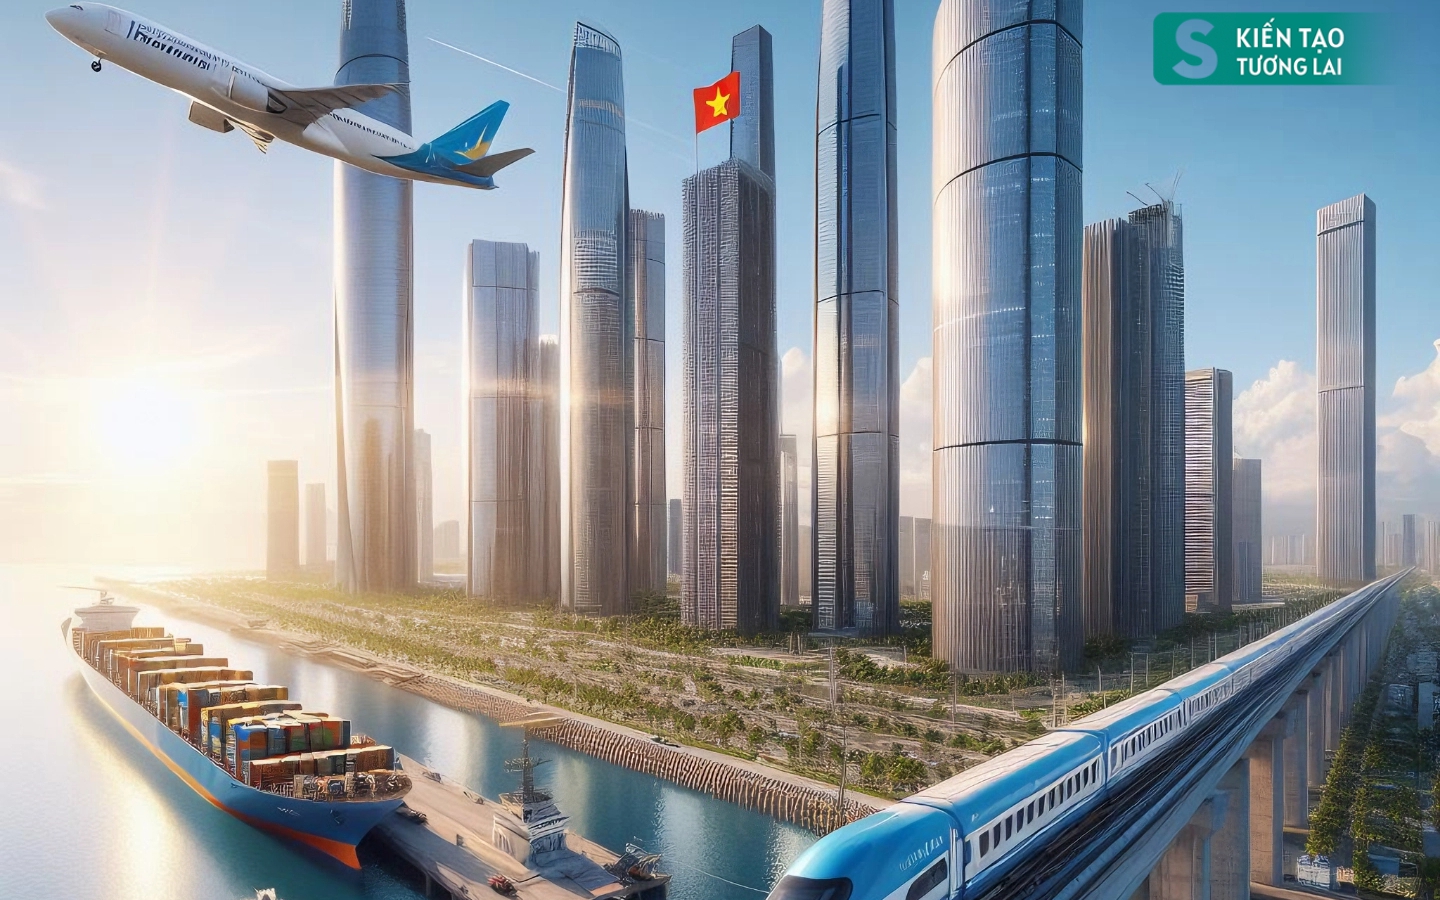 Hình ảnh trong mơ về vùng kinh tế lớn nhất Việt Nam, sở hữu cả 'siêu' sân bay, cảng biển tầm cỡ quốc tế